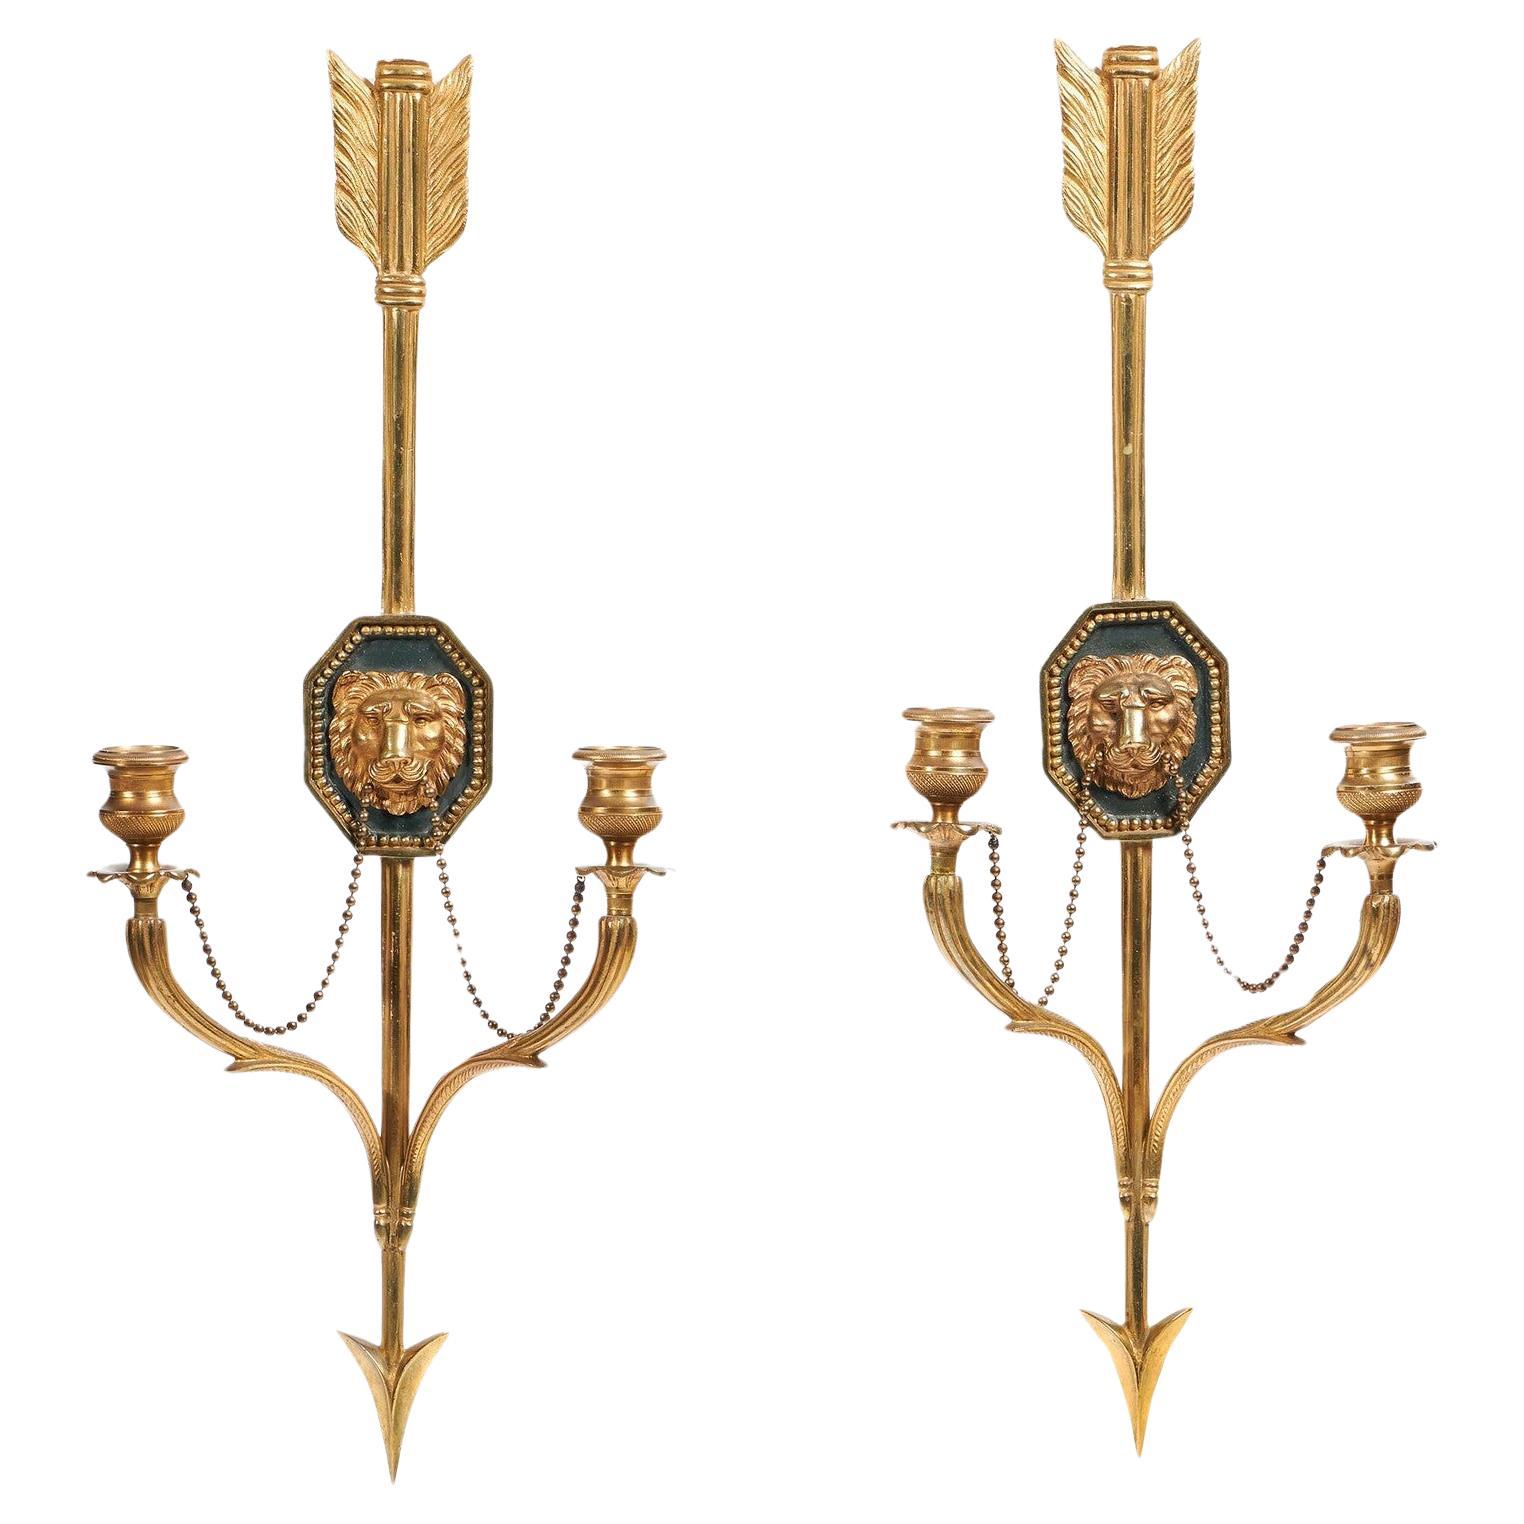 Ein schönes Paar italienischer Ormolu-Wandleuchten oder -Applikationen im französischen Empire-Stil